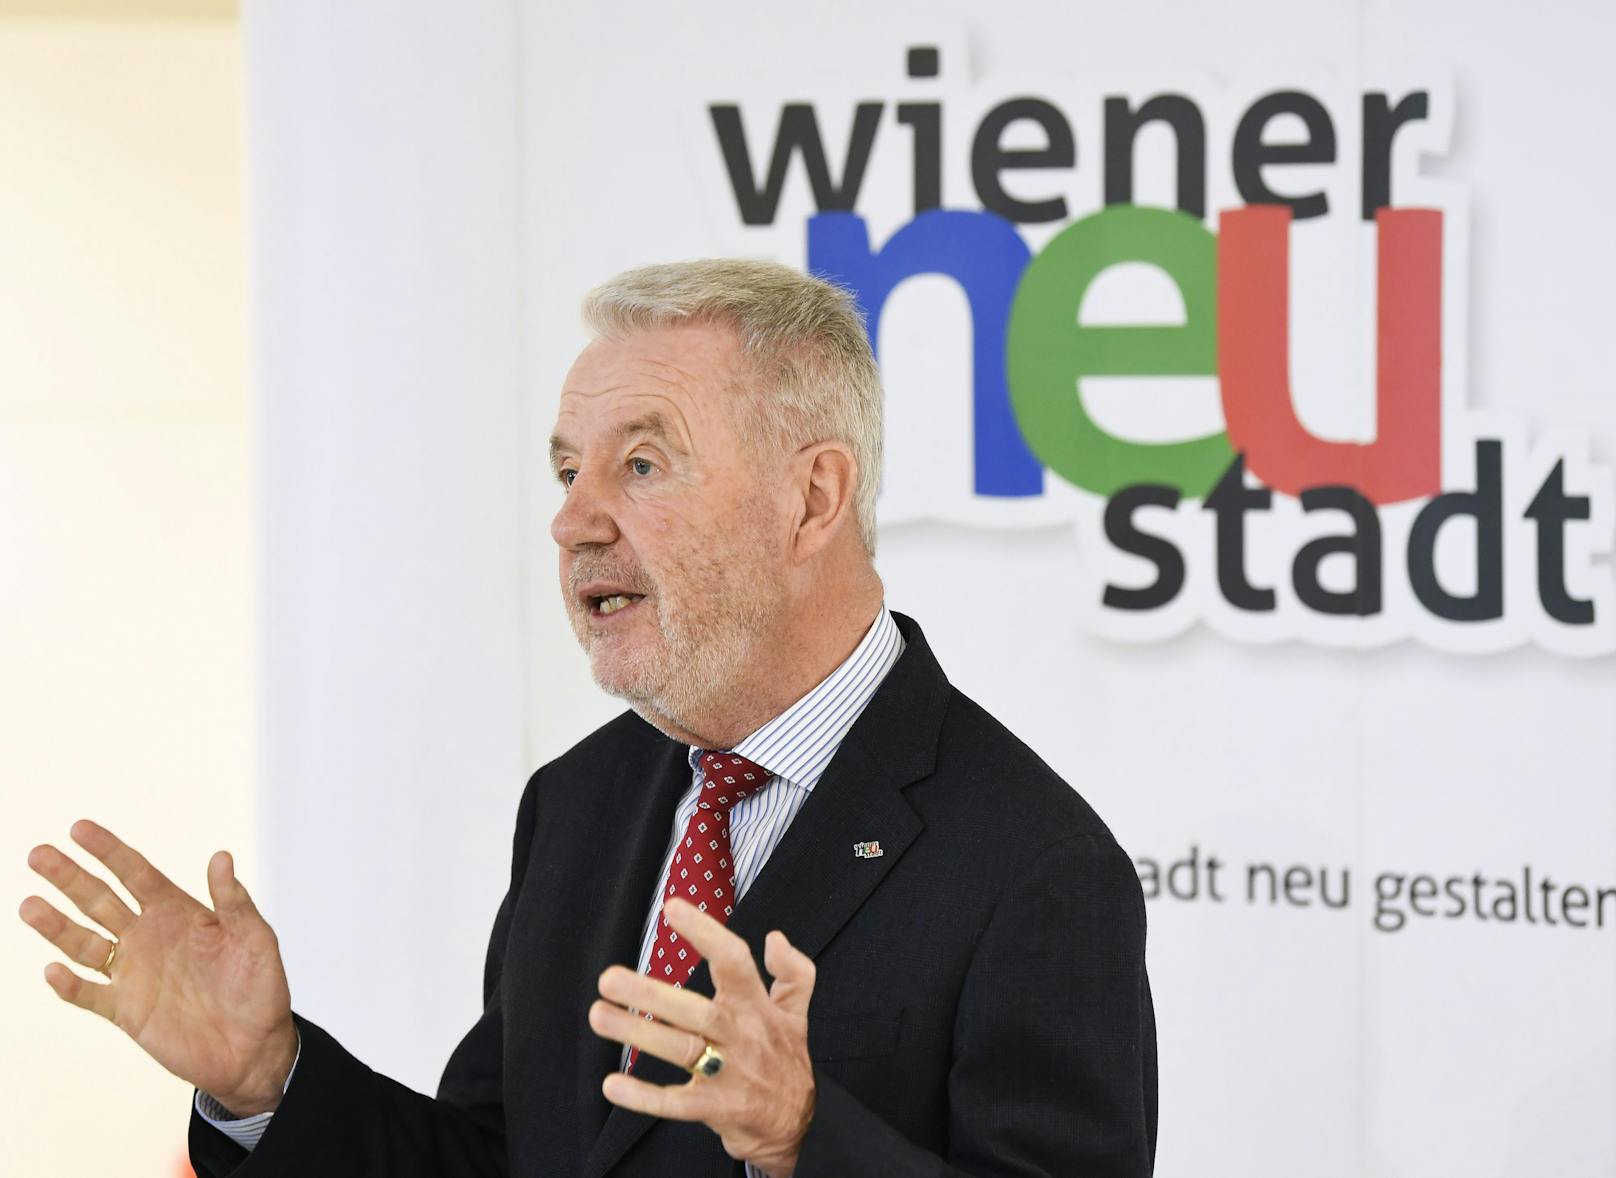 Bürgermeister Klaus Schneeberger während der Pressekonferenz zum Thema "Hochinzidenzgebietsverordnung und die damit verbundenen Maßnahmen" am Donnerstag im ehemaligen "Carnaby" in Wiener Neustadt.